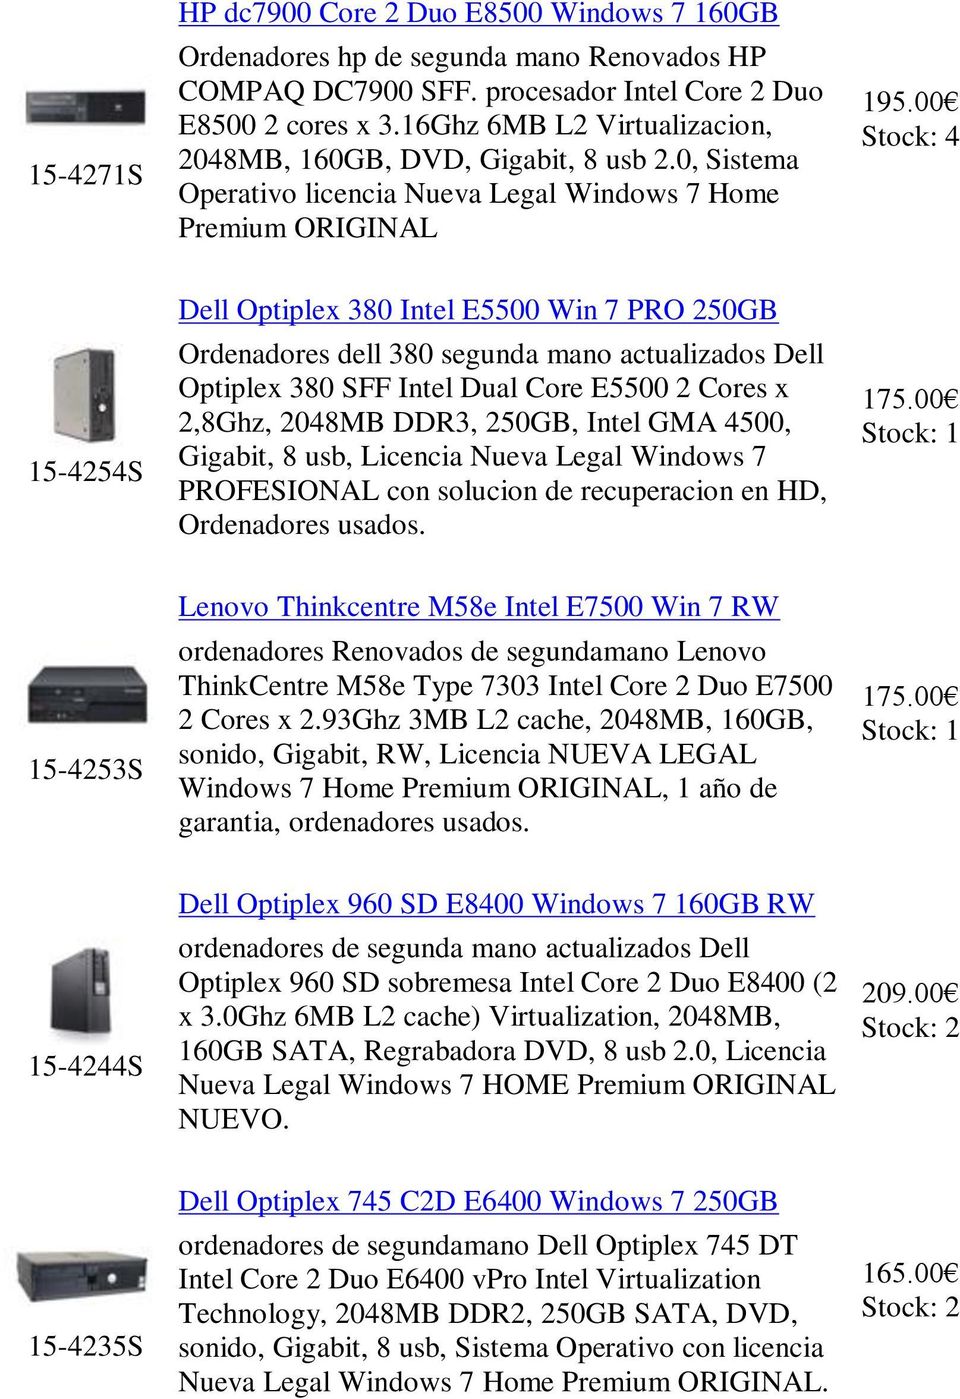 00 4 15-4254S Dell Optiplex 380 Intel E5500 Win 7 PRO 250GB Ordenadores dell 380 segunda mano actualizados Dell Optiplex 380 SFF Intel Dual Core E5500 2 Cores x 2,8Ghz, 2048MB DDR3, 250GB, Intel GMA